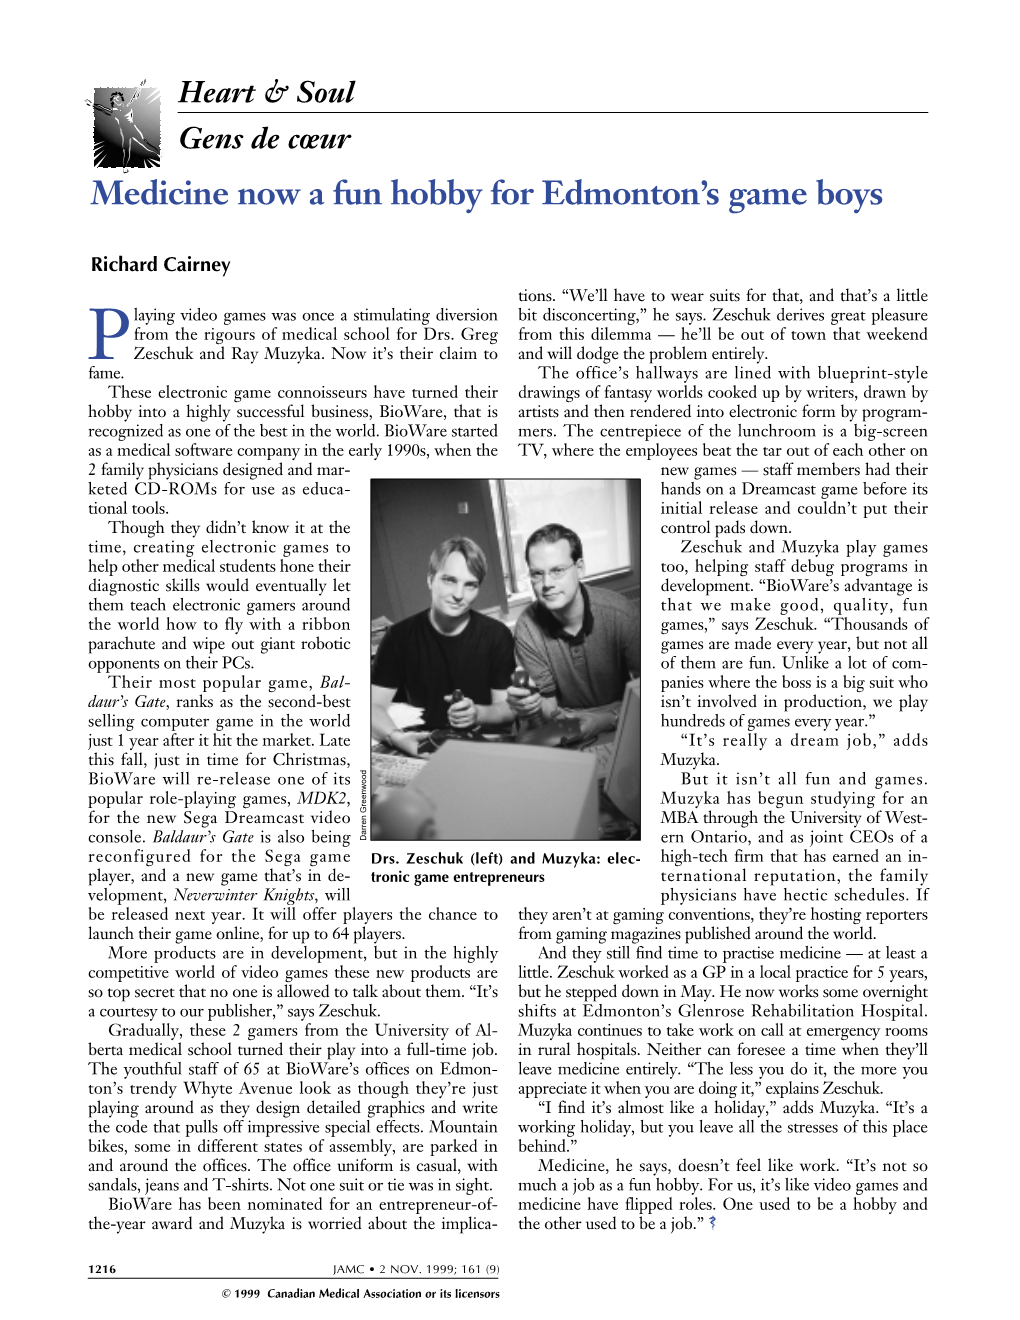 Medicine Now a Fun Hobby for Edmonton's Game Boys